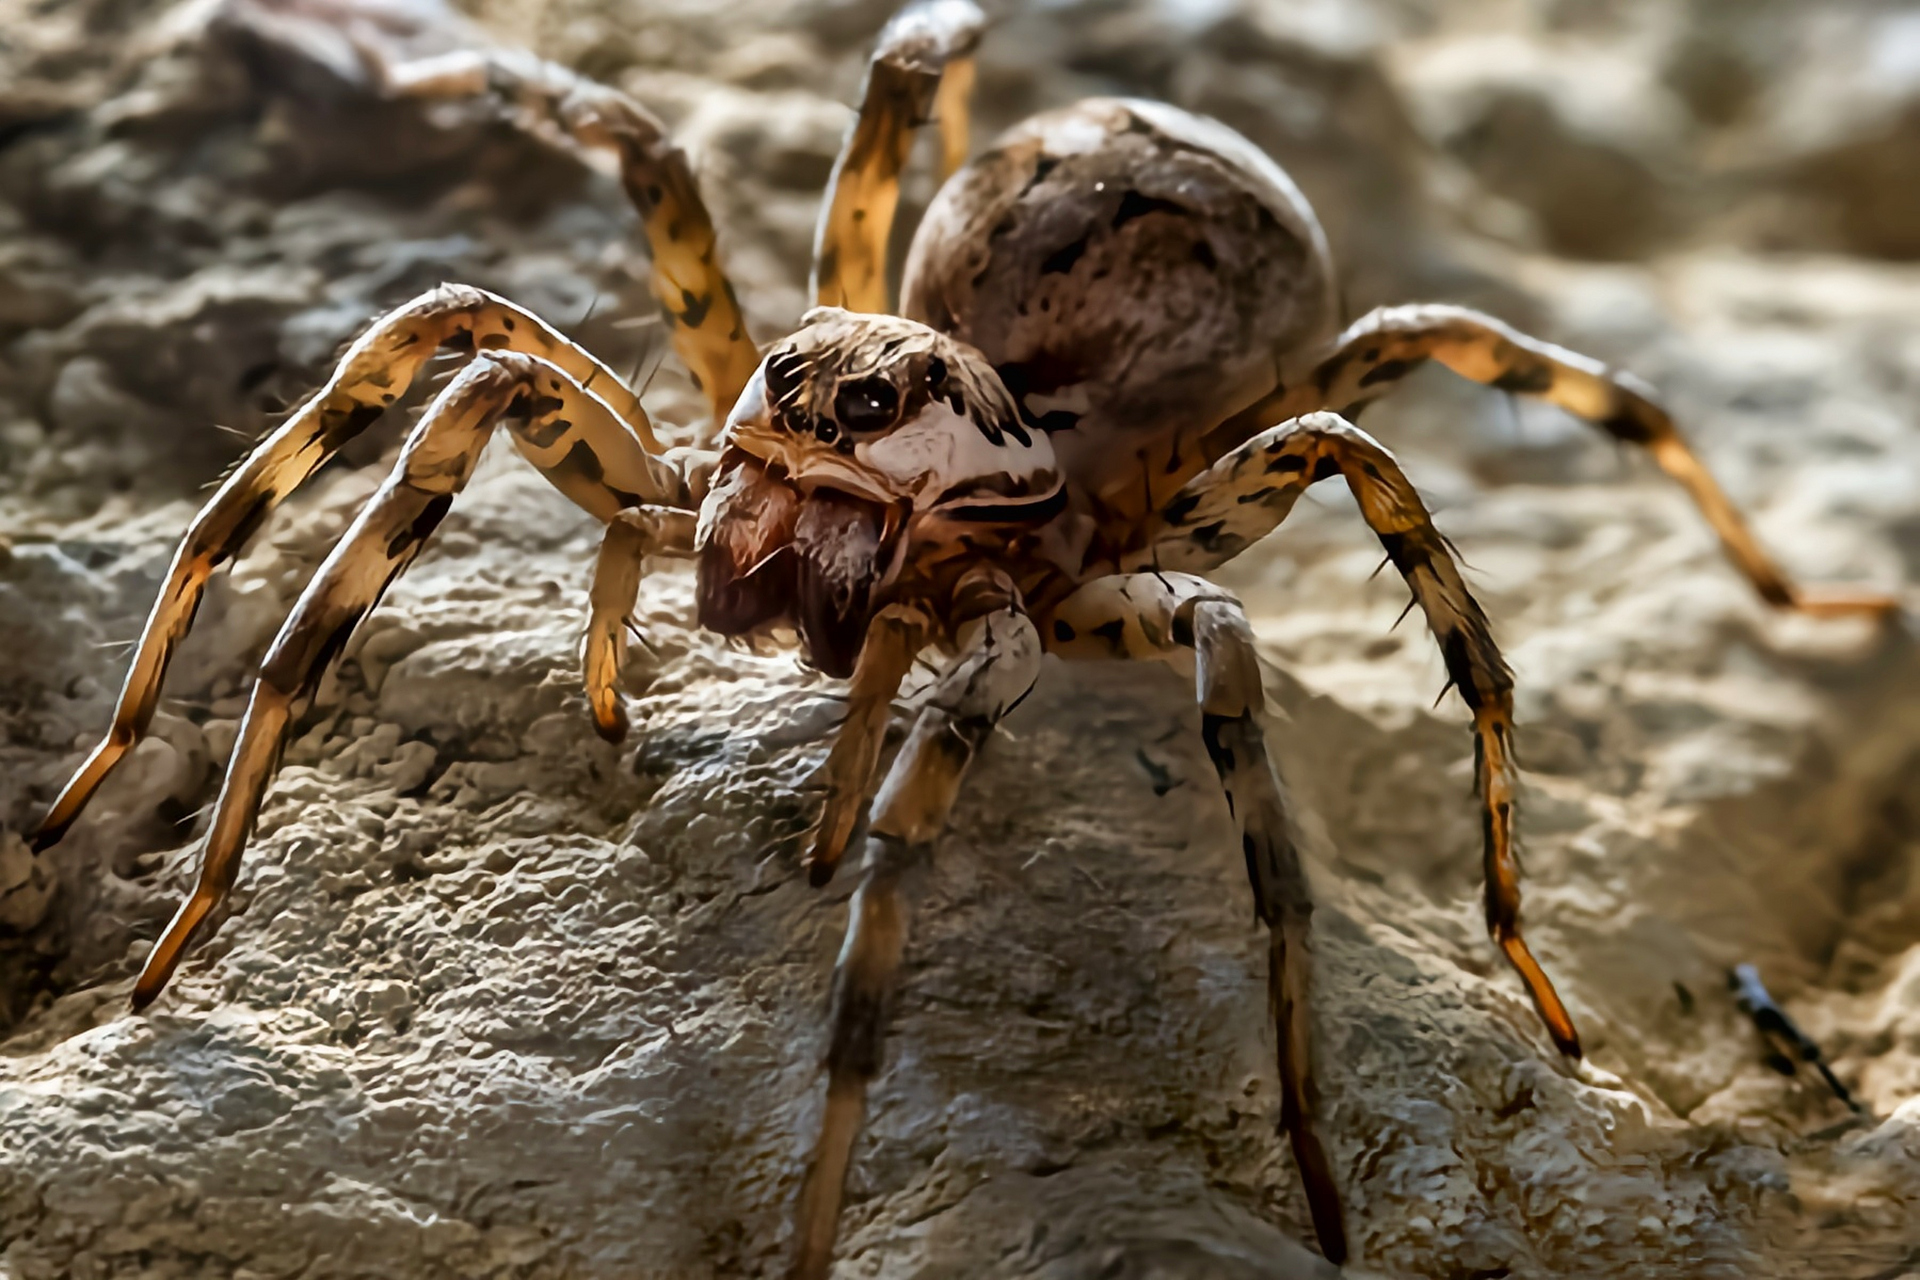 中华狼蛛别名地侠,是栖息于我国北方棉区的穴居性蜘蛛,捕食金龟,夜蛾